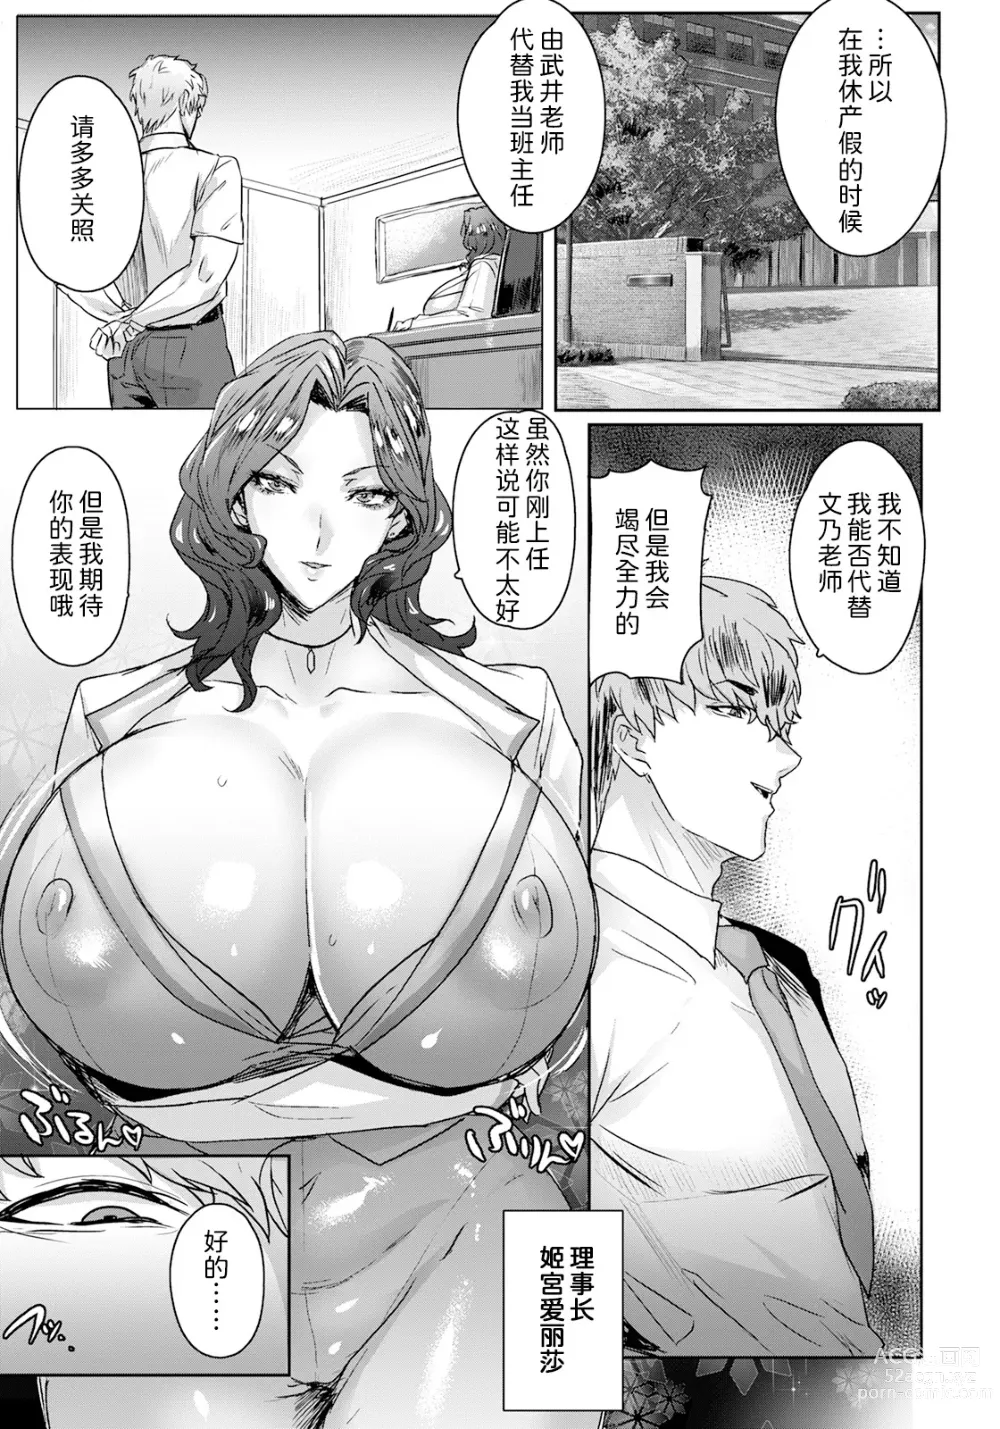 Page 7 of manga Jusei Sankan Ch. 1-4